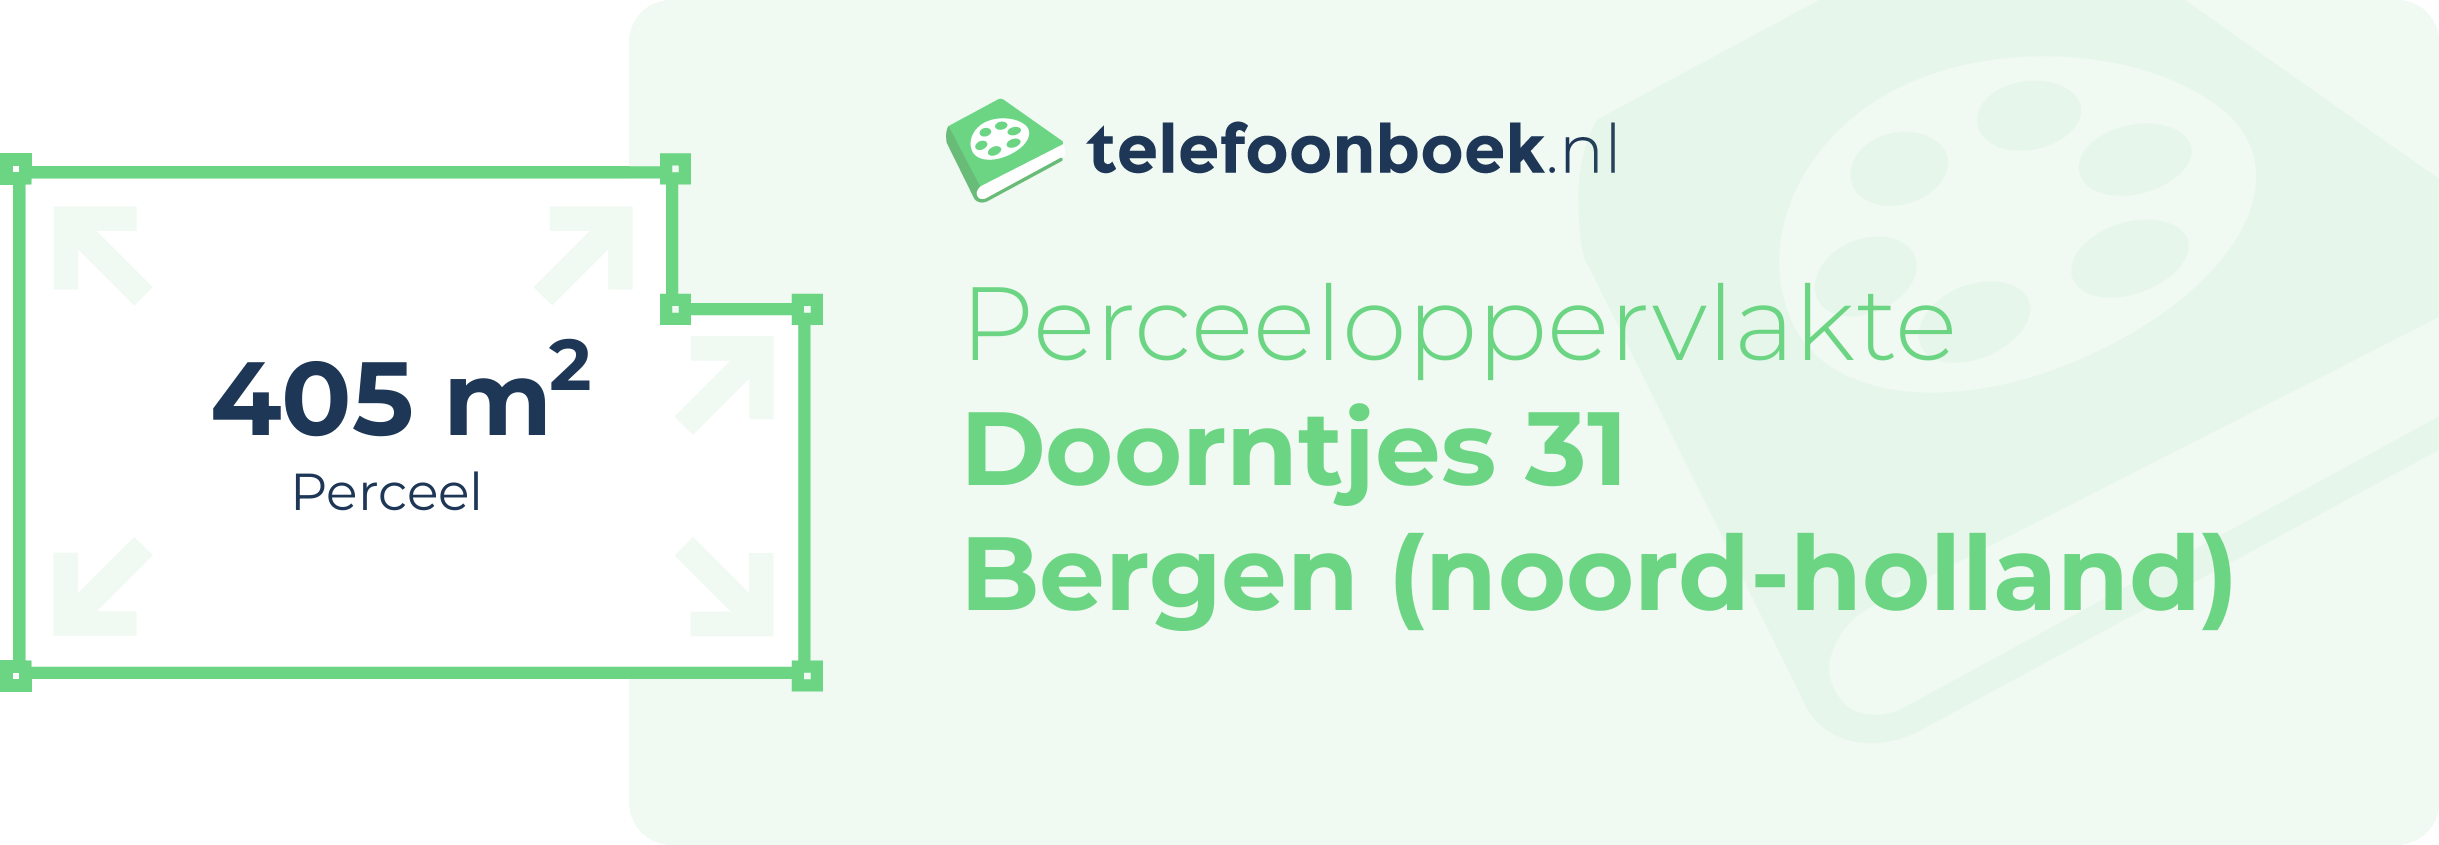 Perceeloppervlakte Doorntjes 31 Bergen (Noord-Holland)